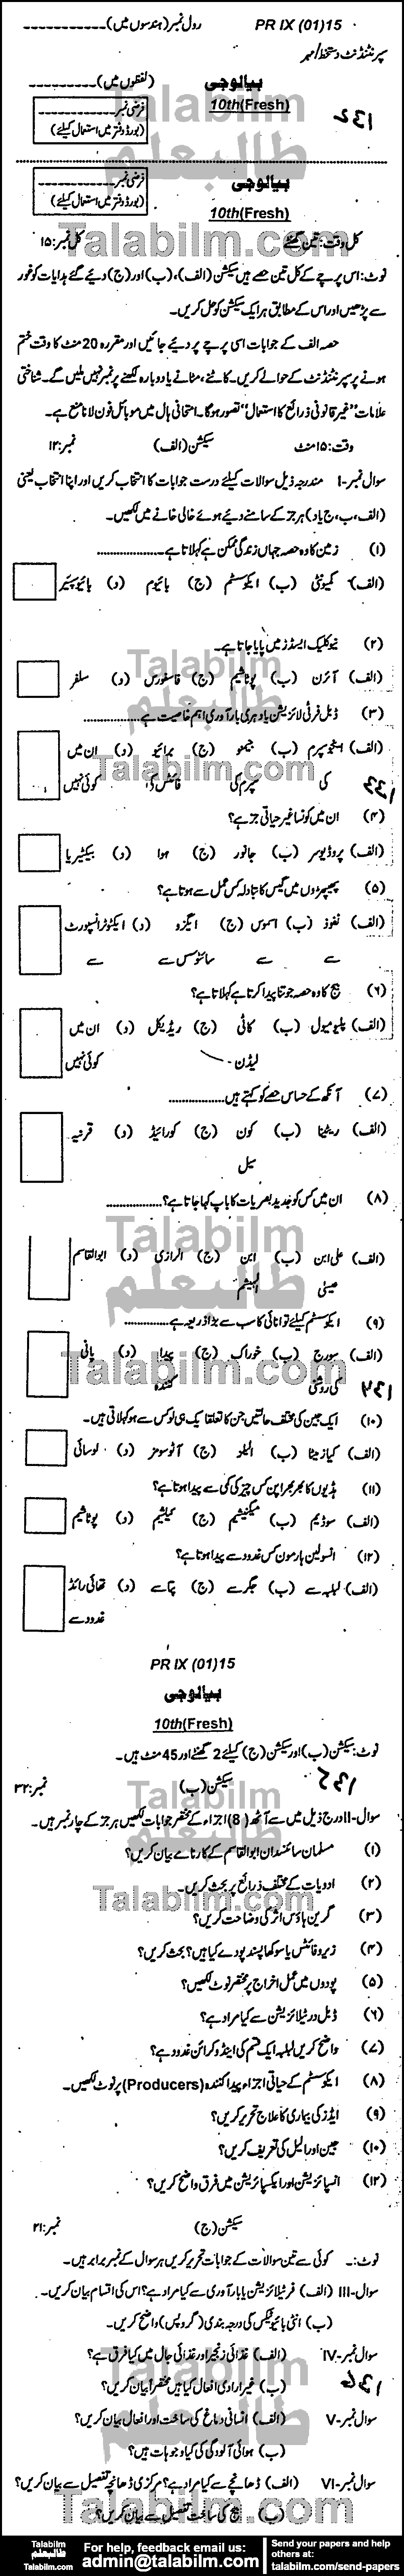 Biology 0 past paper for Urdu Medium 2015 Group-I